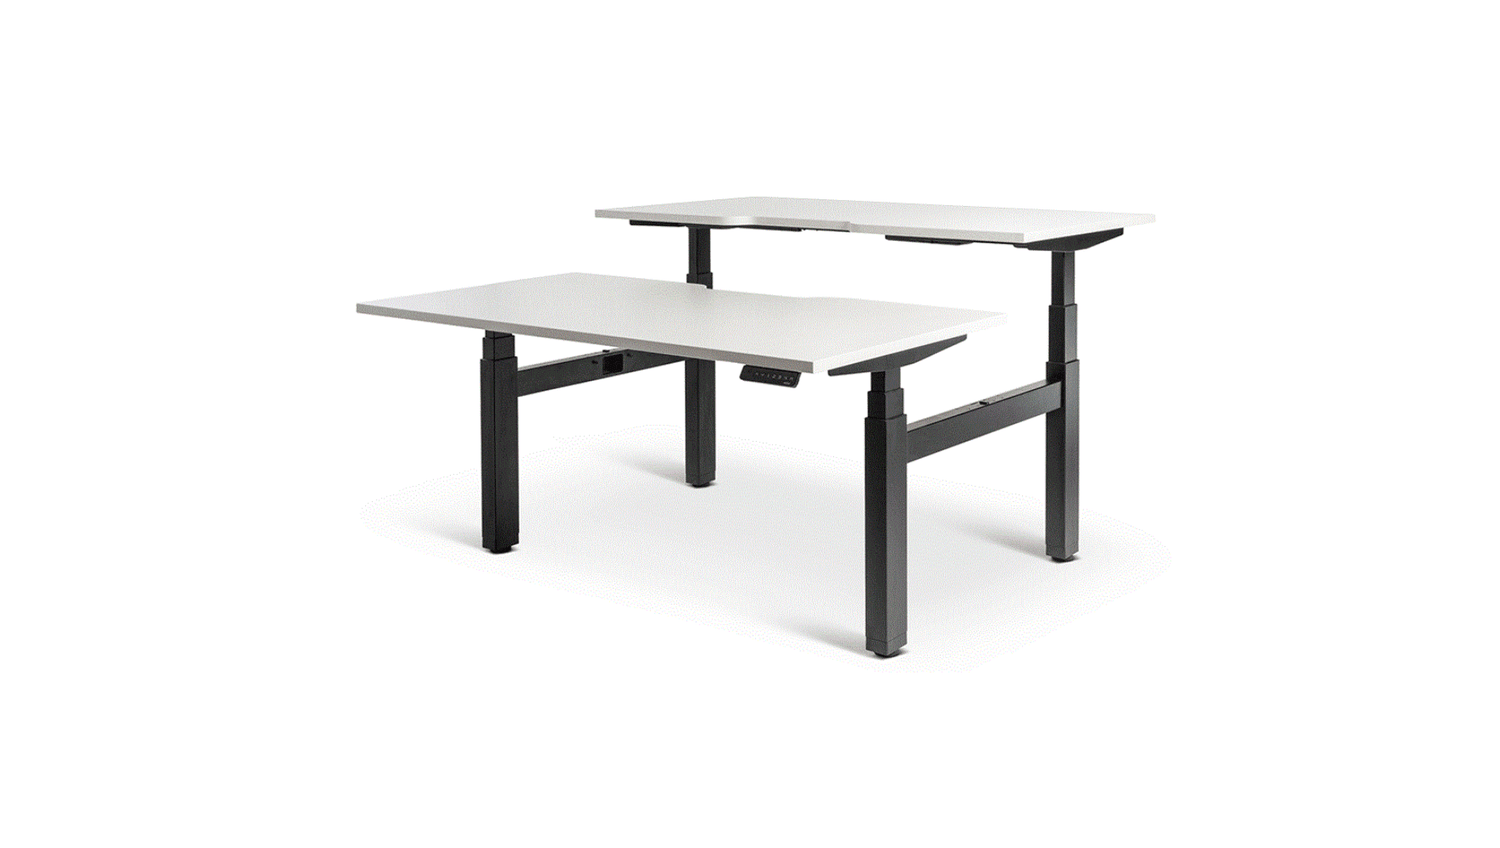 Desks 1500 x 800 / White / Black Enhance Electric Height Adjustable Shared Desk